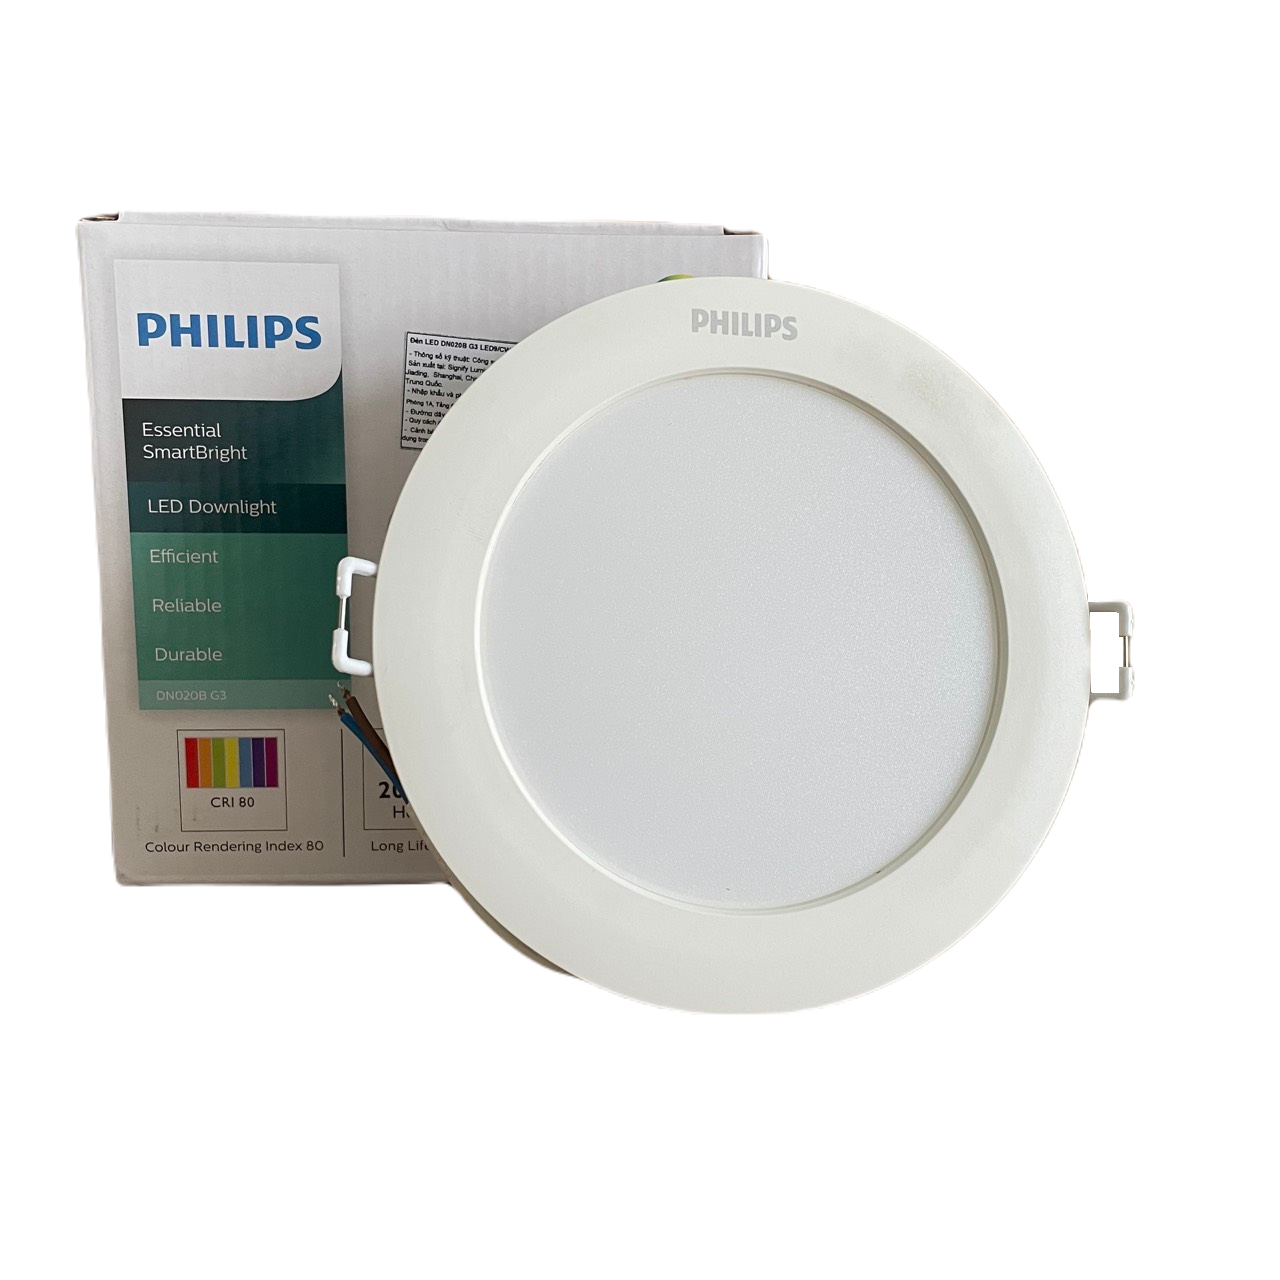 Đèn downlight âm trần LED Philips Essential SmartBright DN020B G3 LED20/NW 23W 220-240V D200 GM